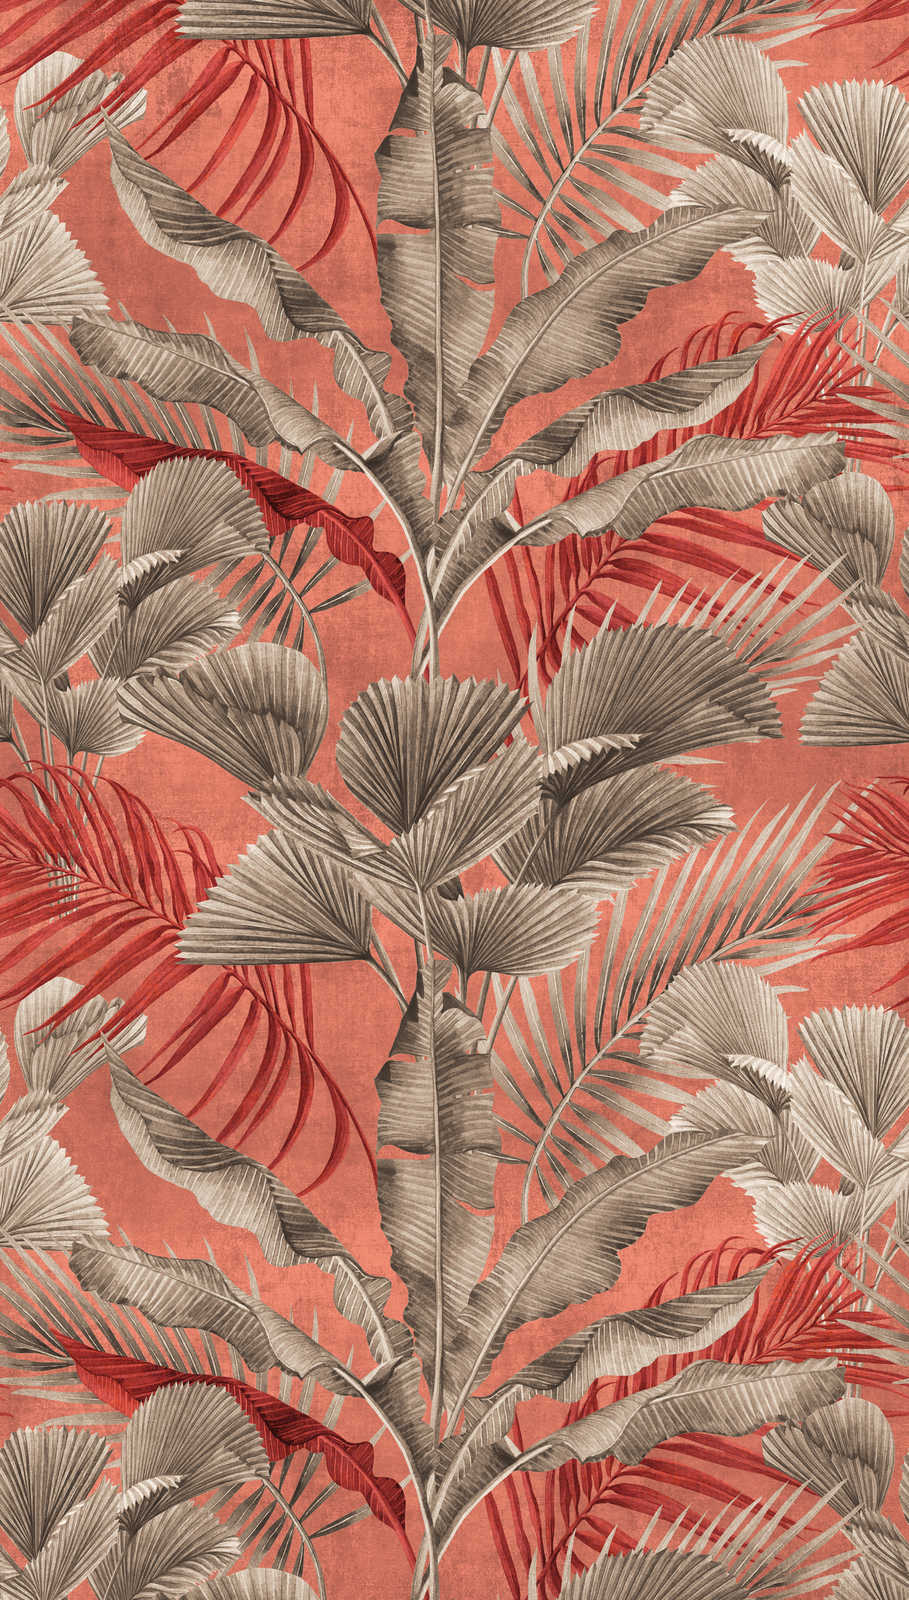             Dschungeltapete mit tropischen Pflanzen – Rosa, Rot, Grau
        